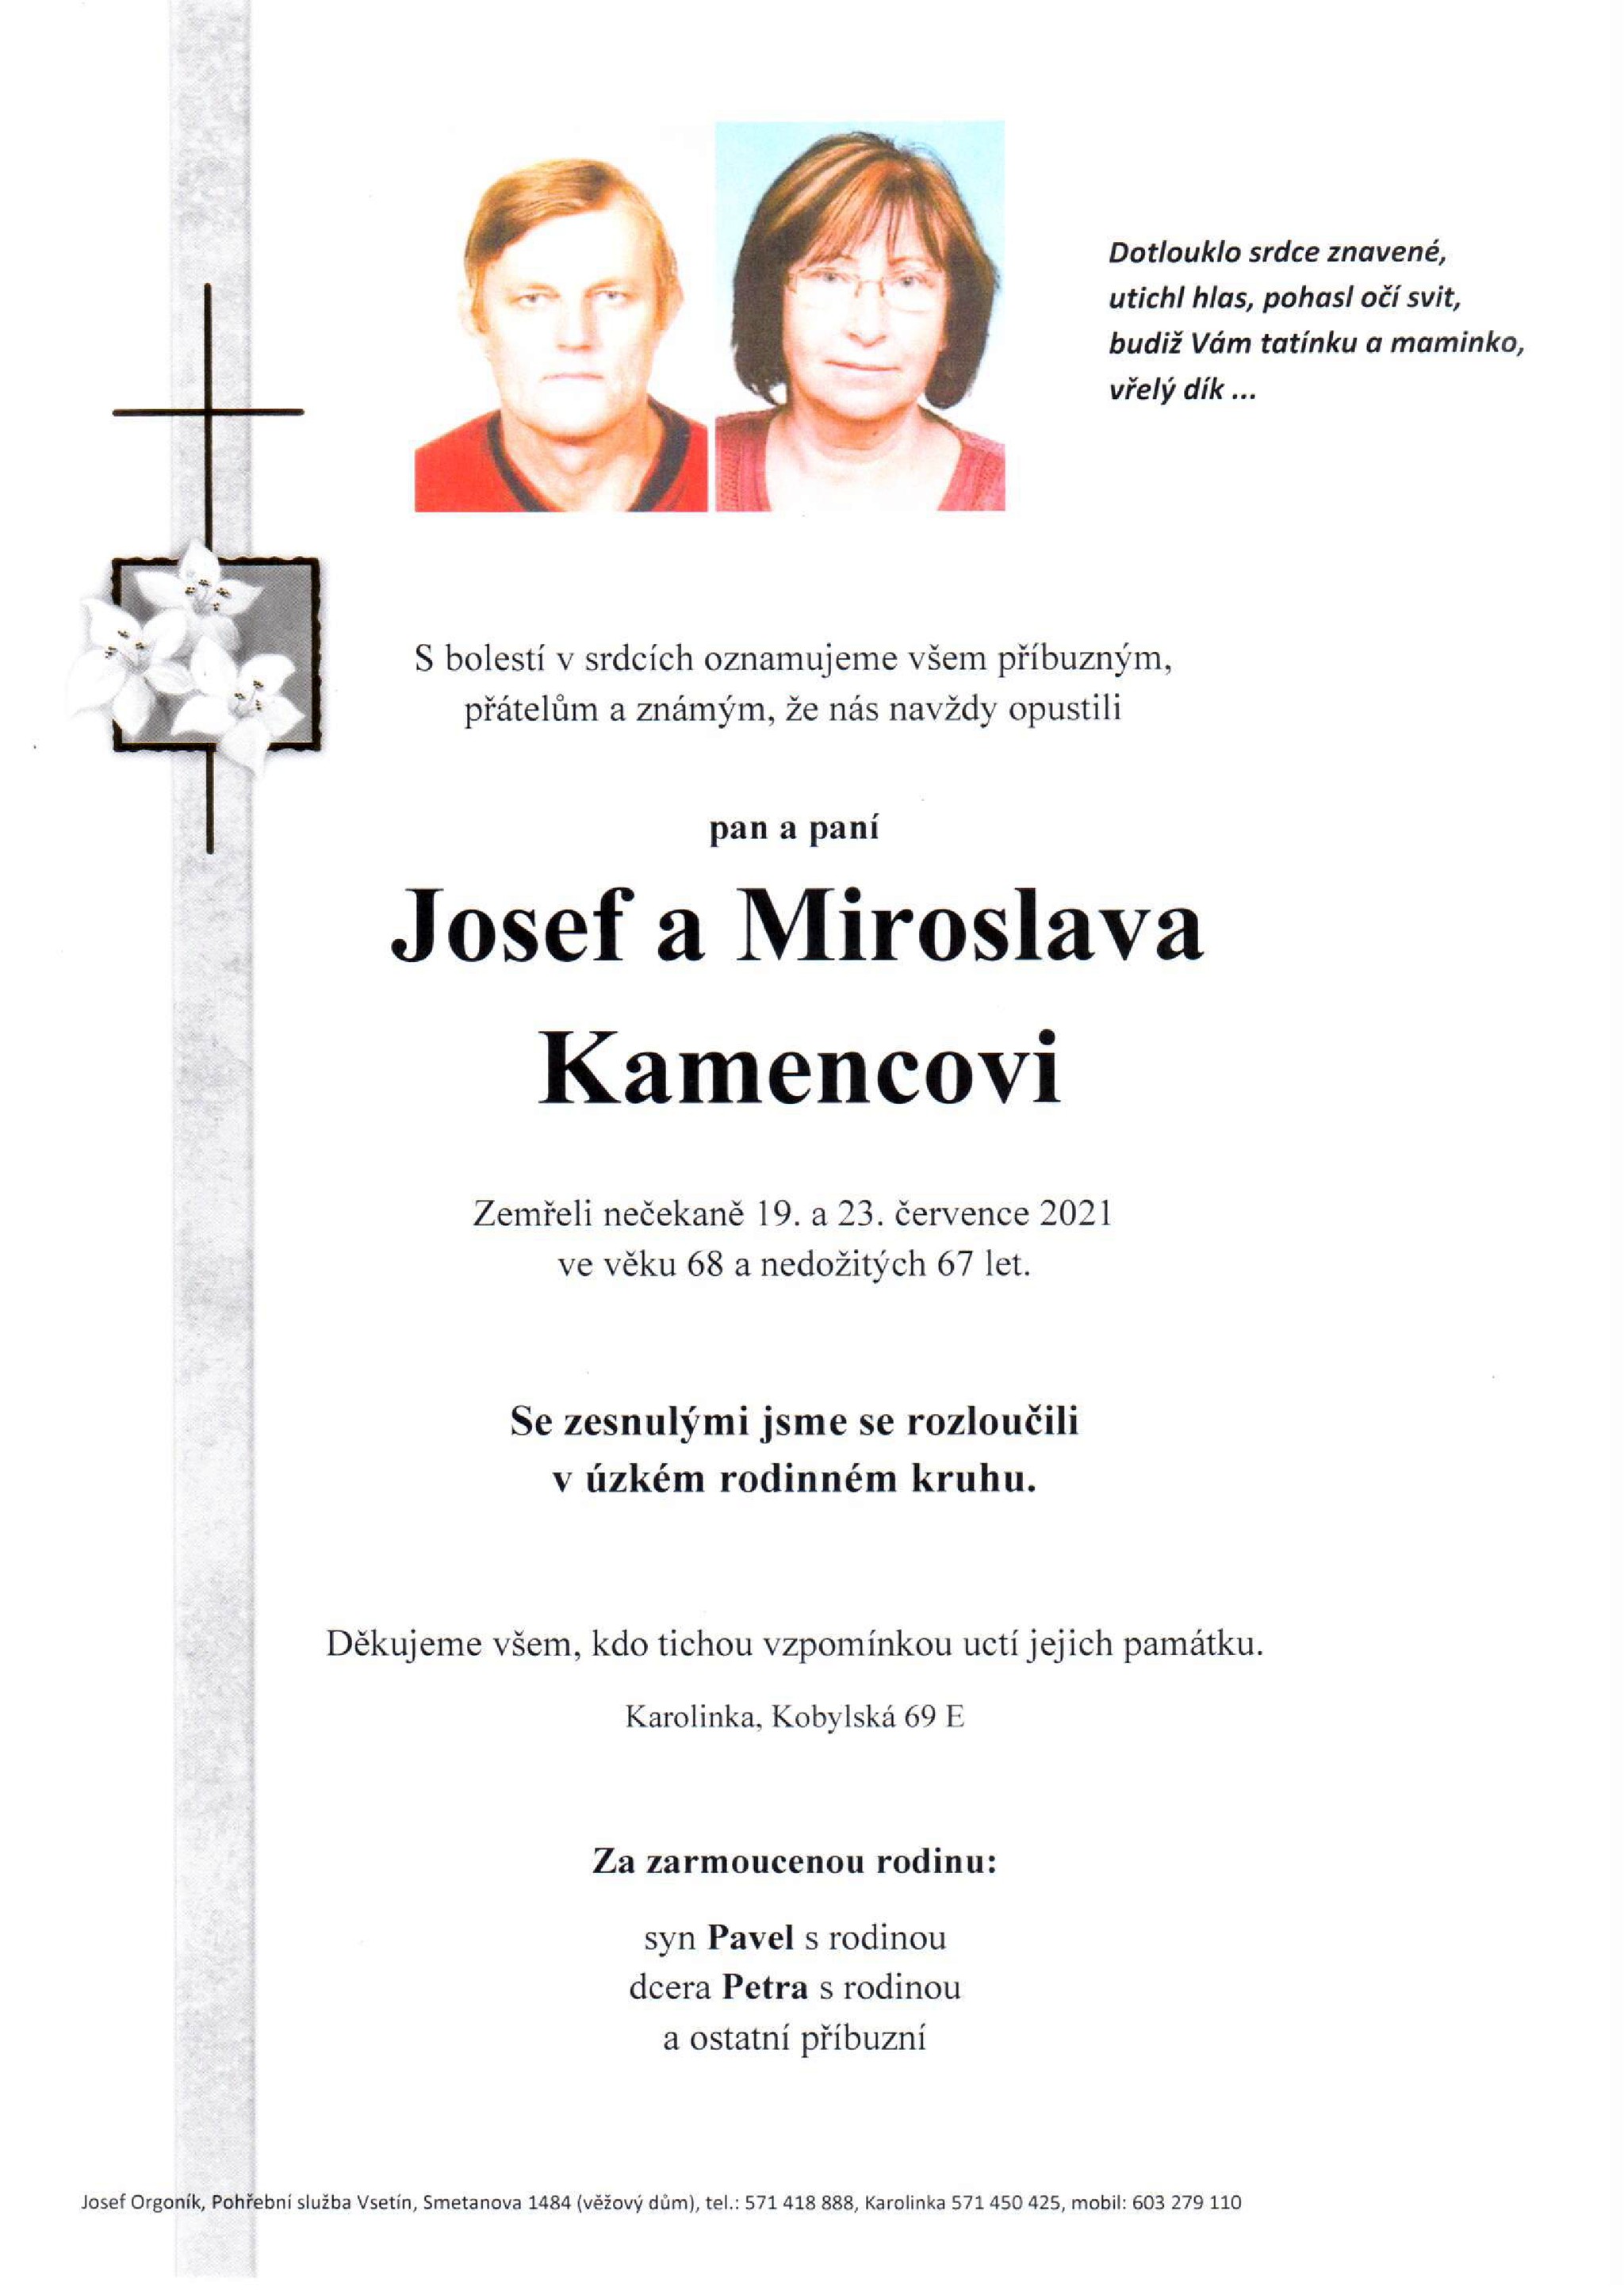 Josef a Miroslava Kamencovi